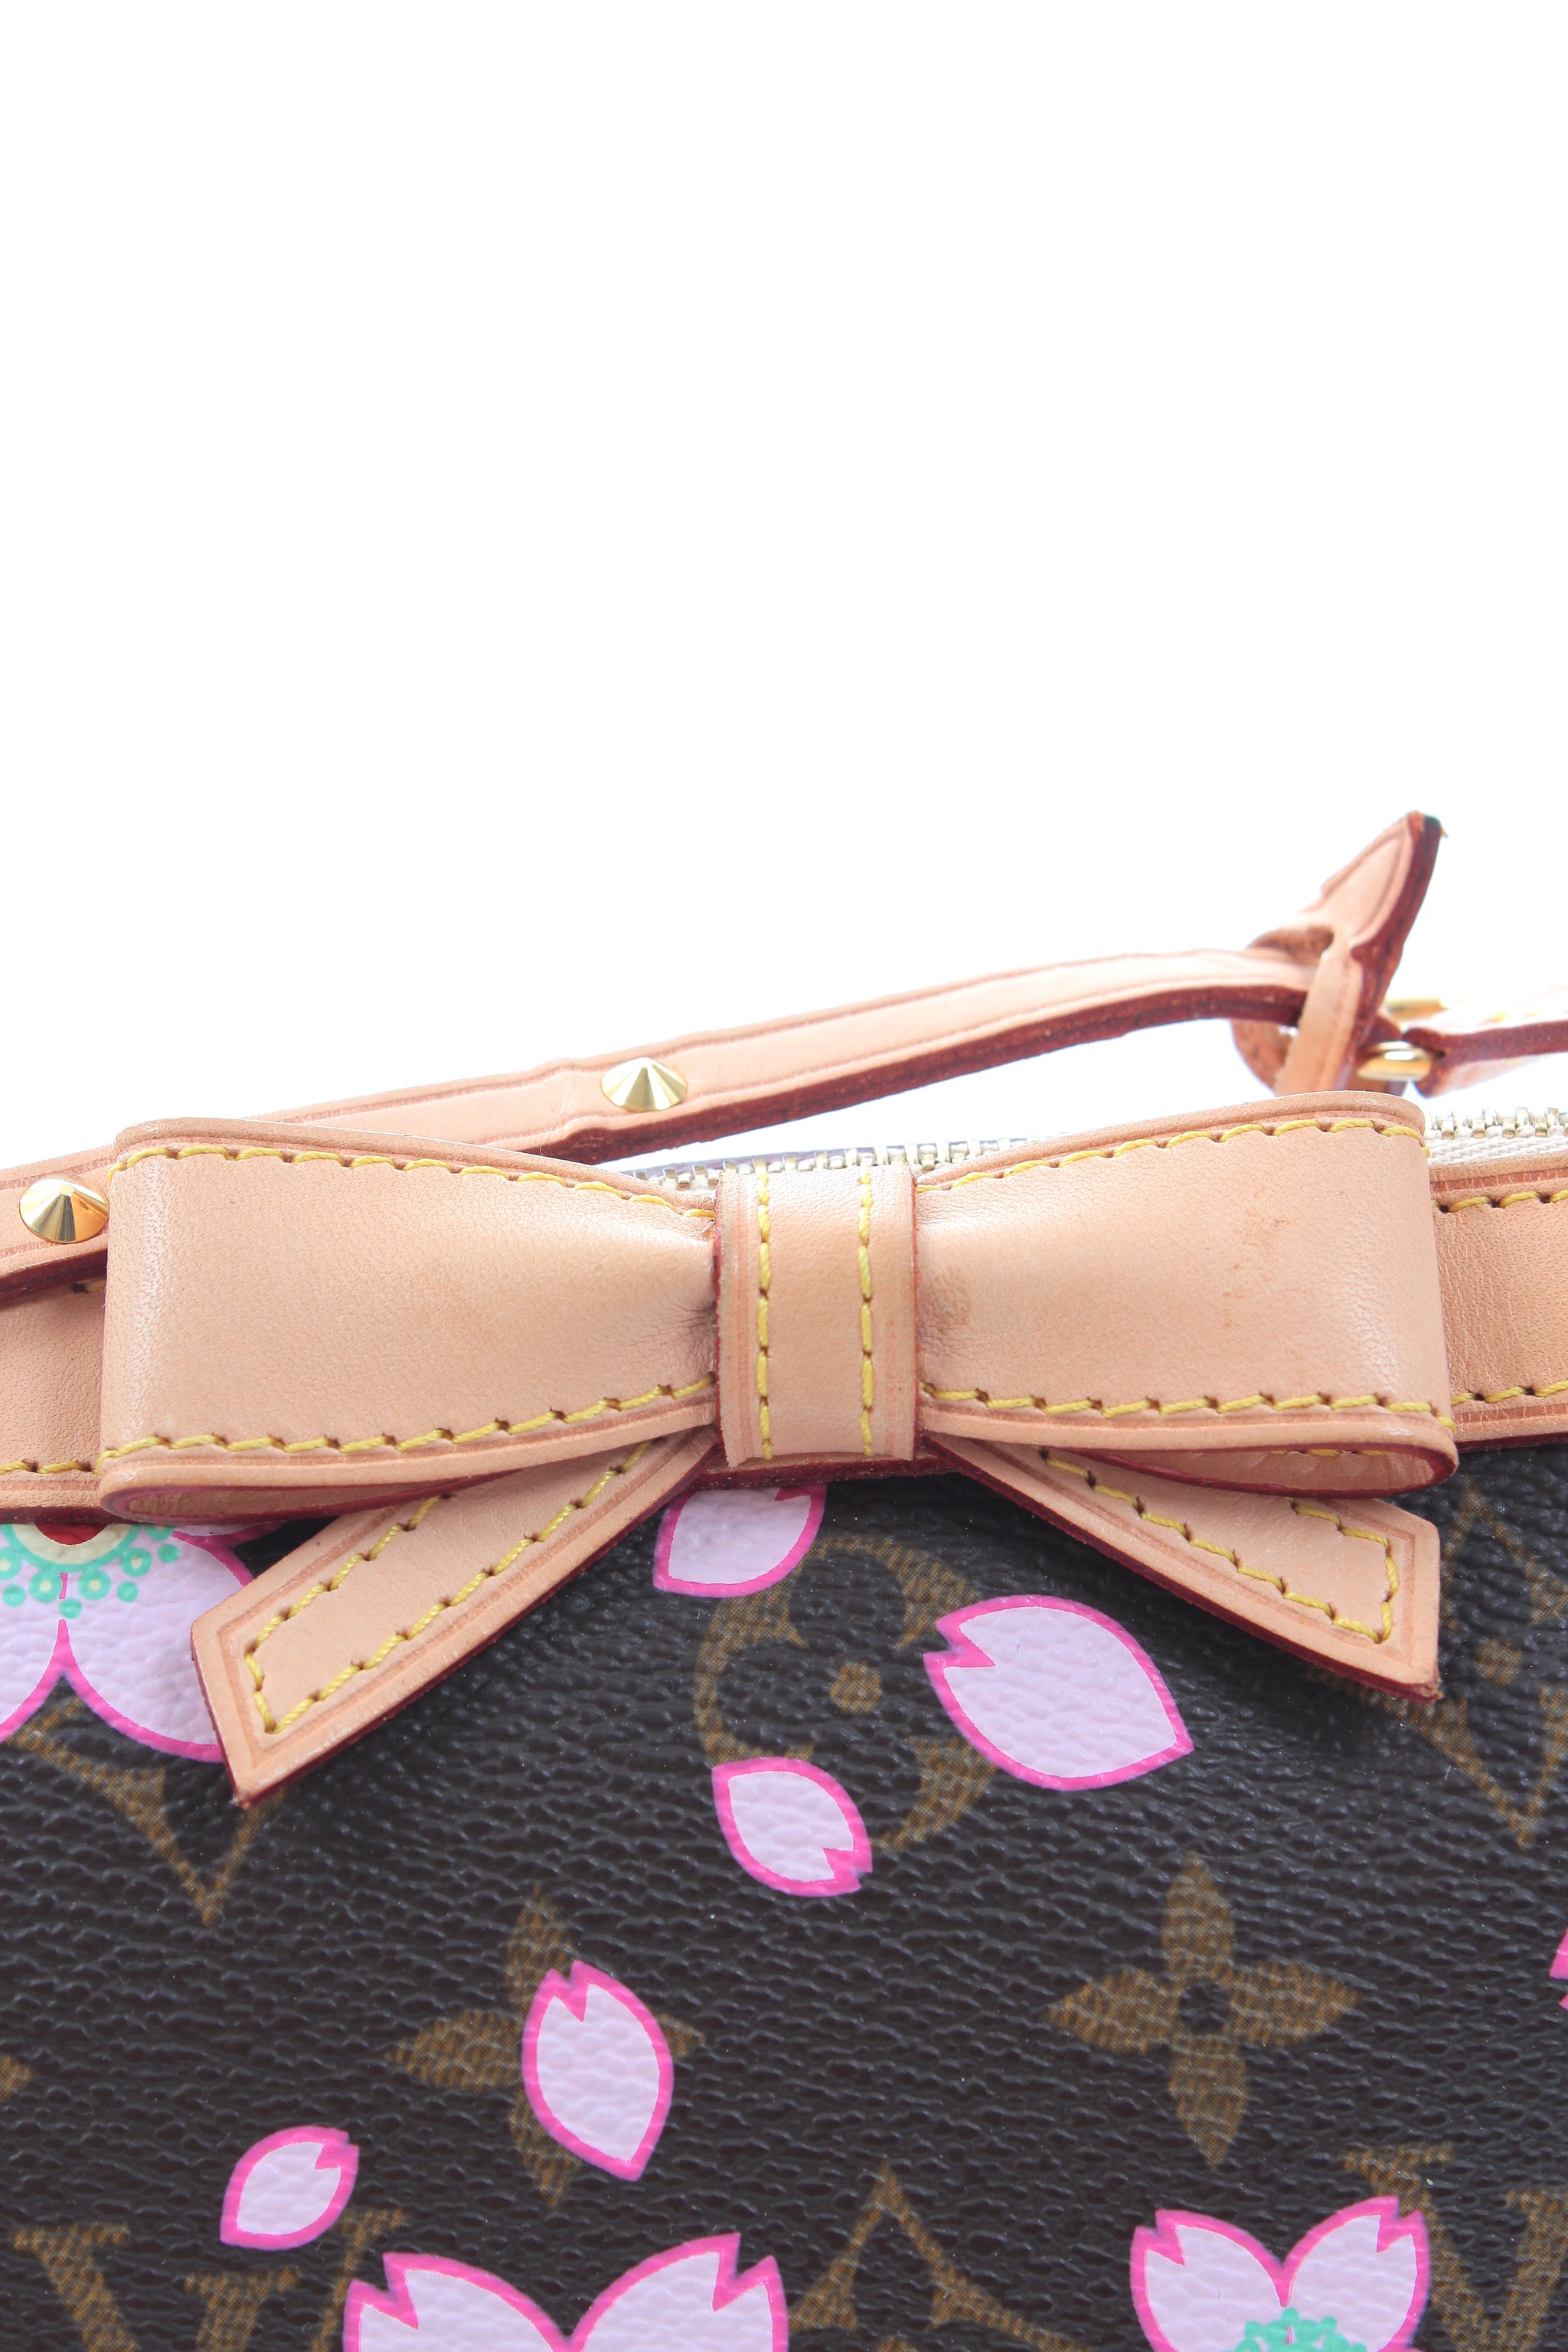 Buy [Bag] LOUIS VUITTON Louis Vuitton Monogram Cherry Blossom